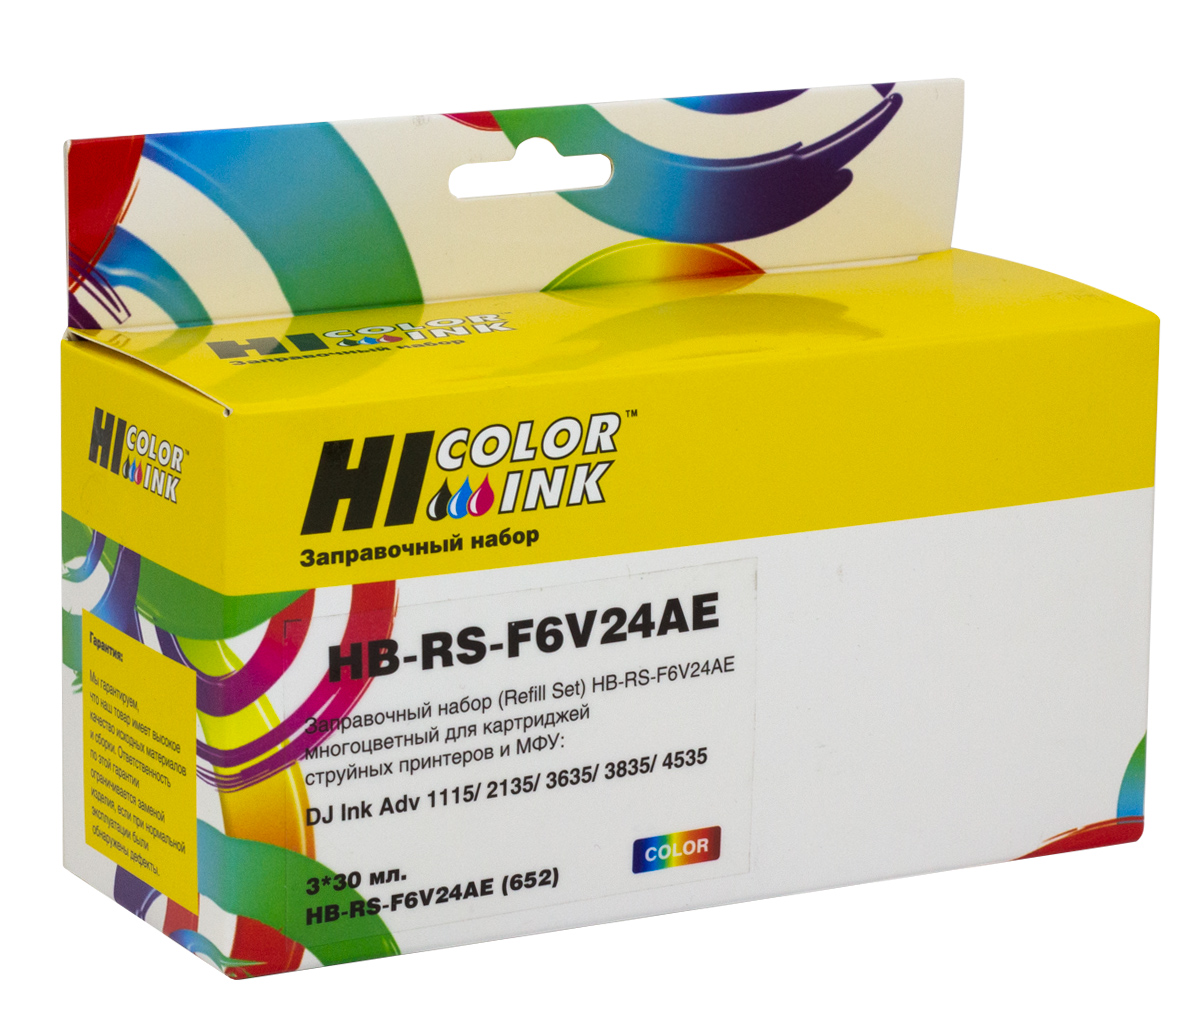 Заправочный набор Hi-Black F6V24AE для HP DJ Ink Adv 1115/2135/3635/3835/4535, Сolor, 90ml